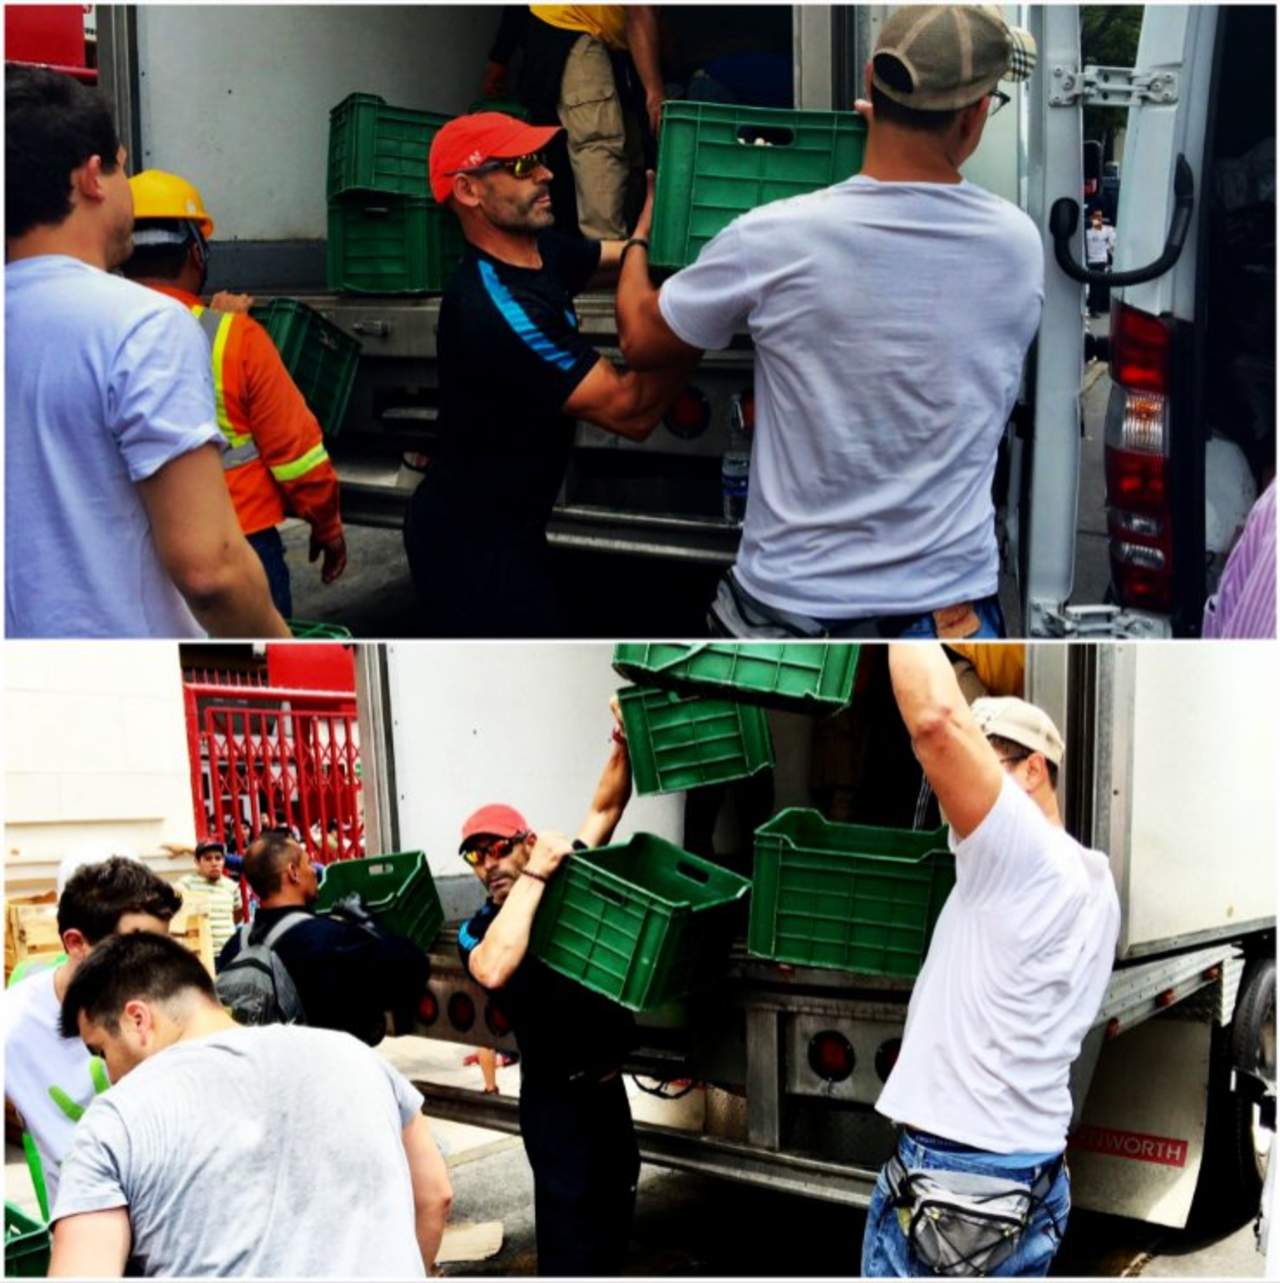 El técnico de Cruz Azul duró seis horas en labores de ayuda. Jémez ayuda a víctimas del terremoto